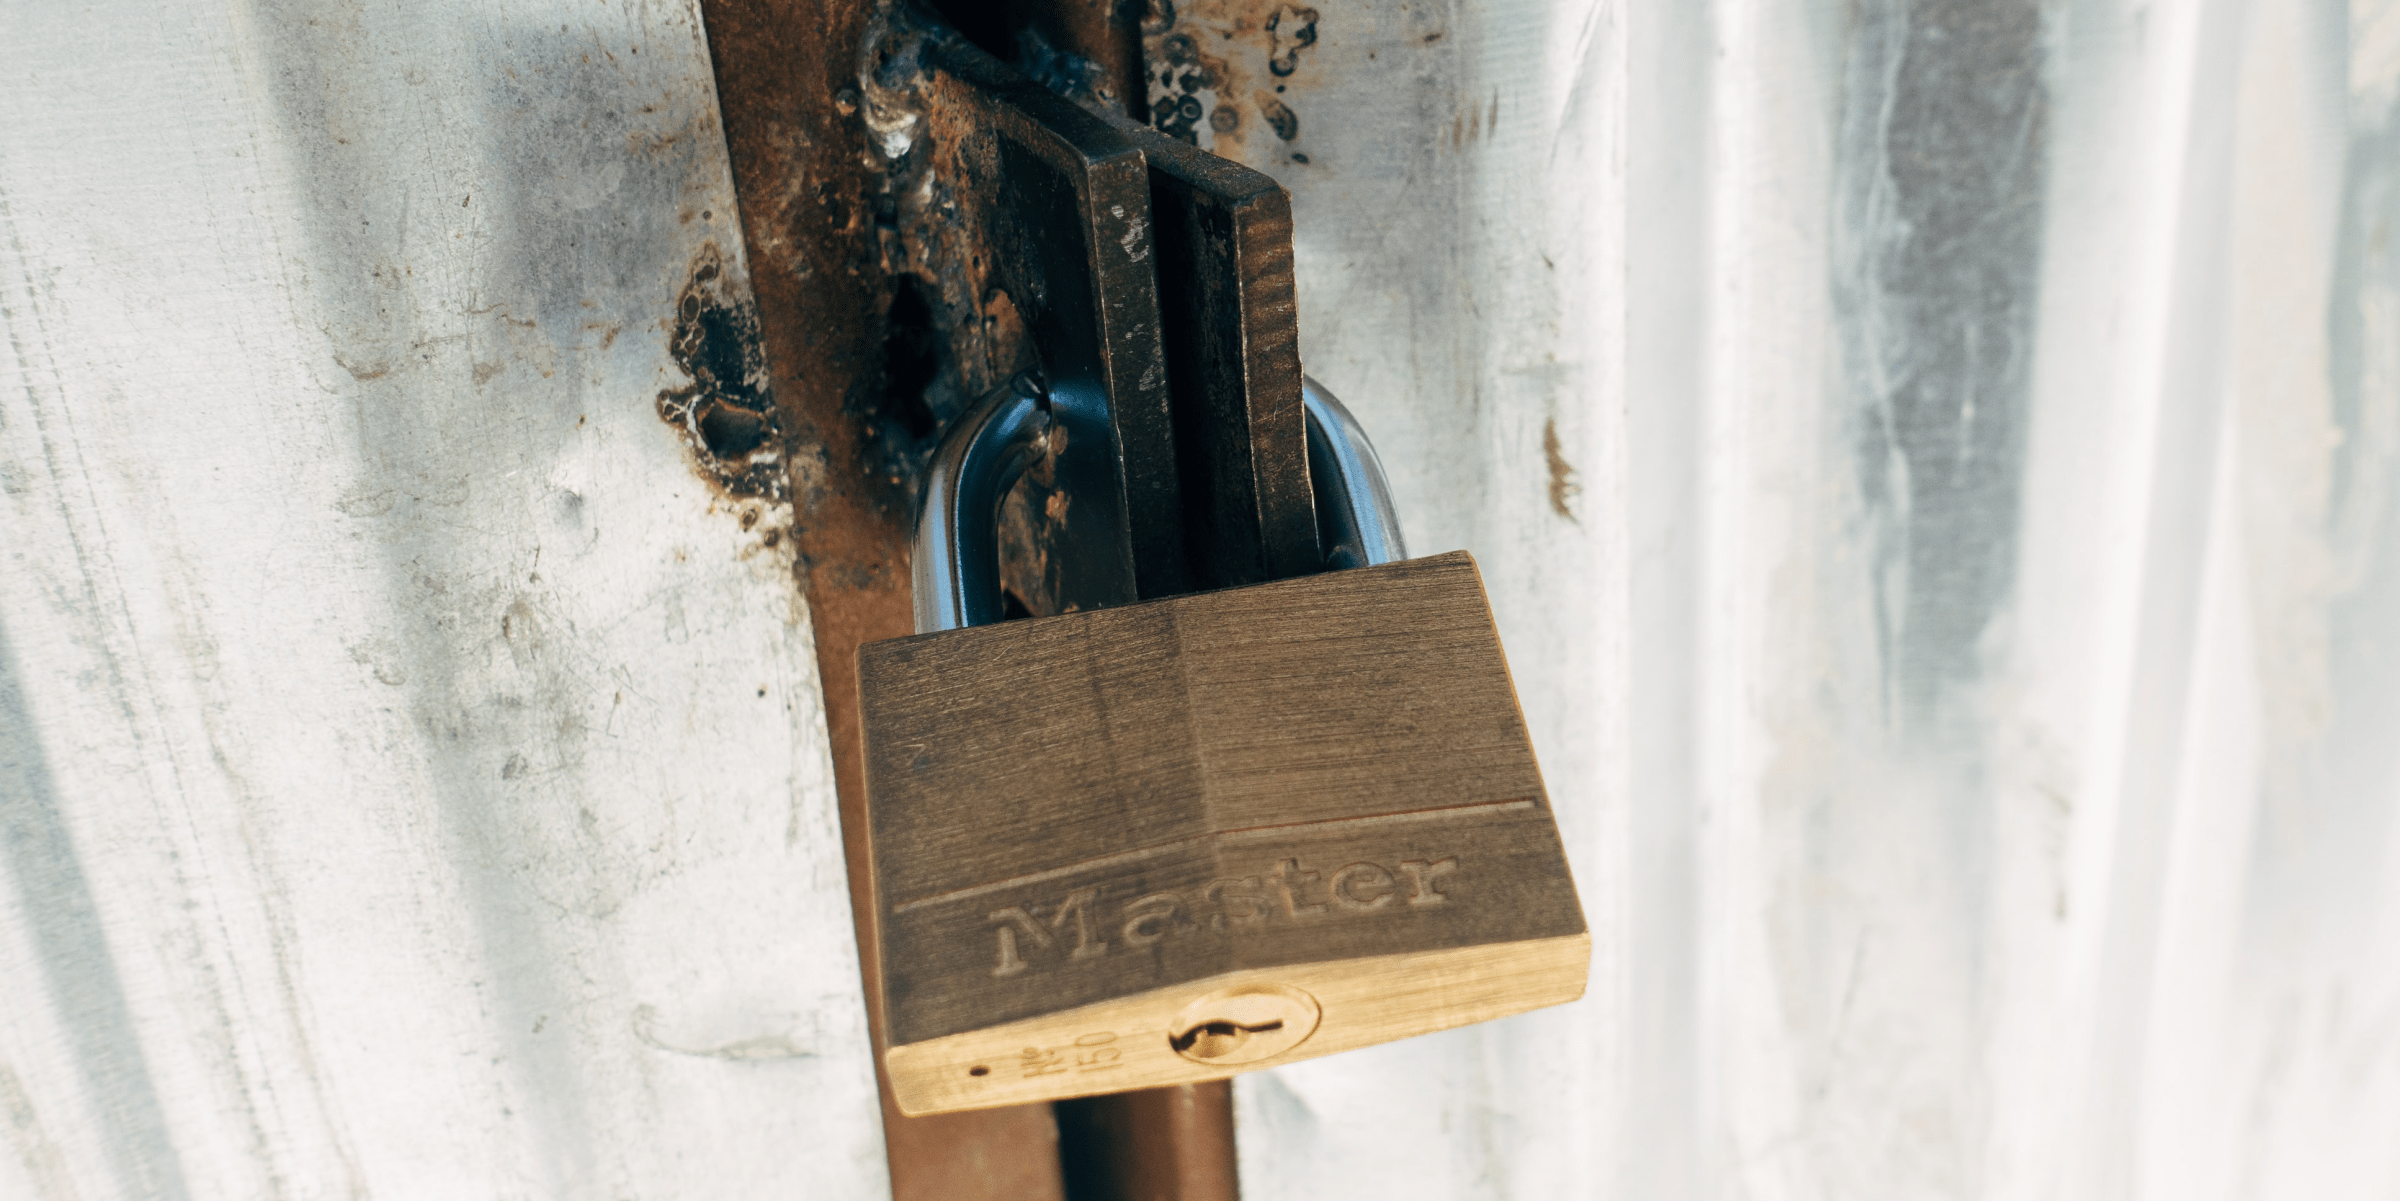 MWSoft Secure Encryptor